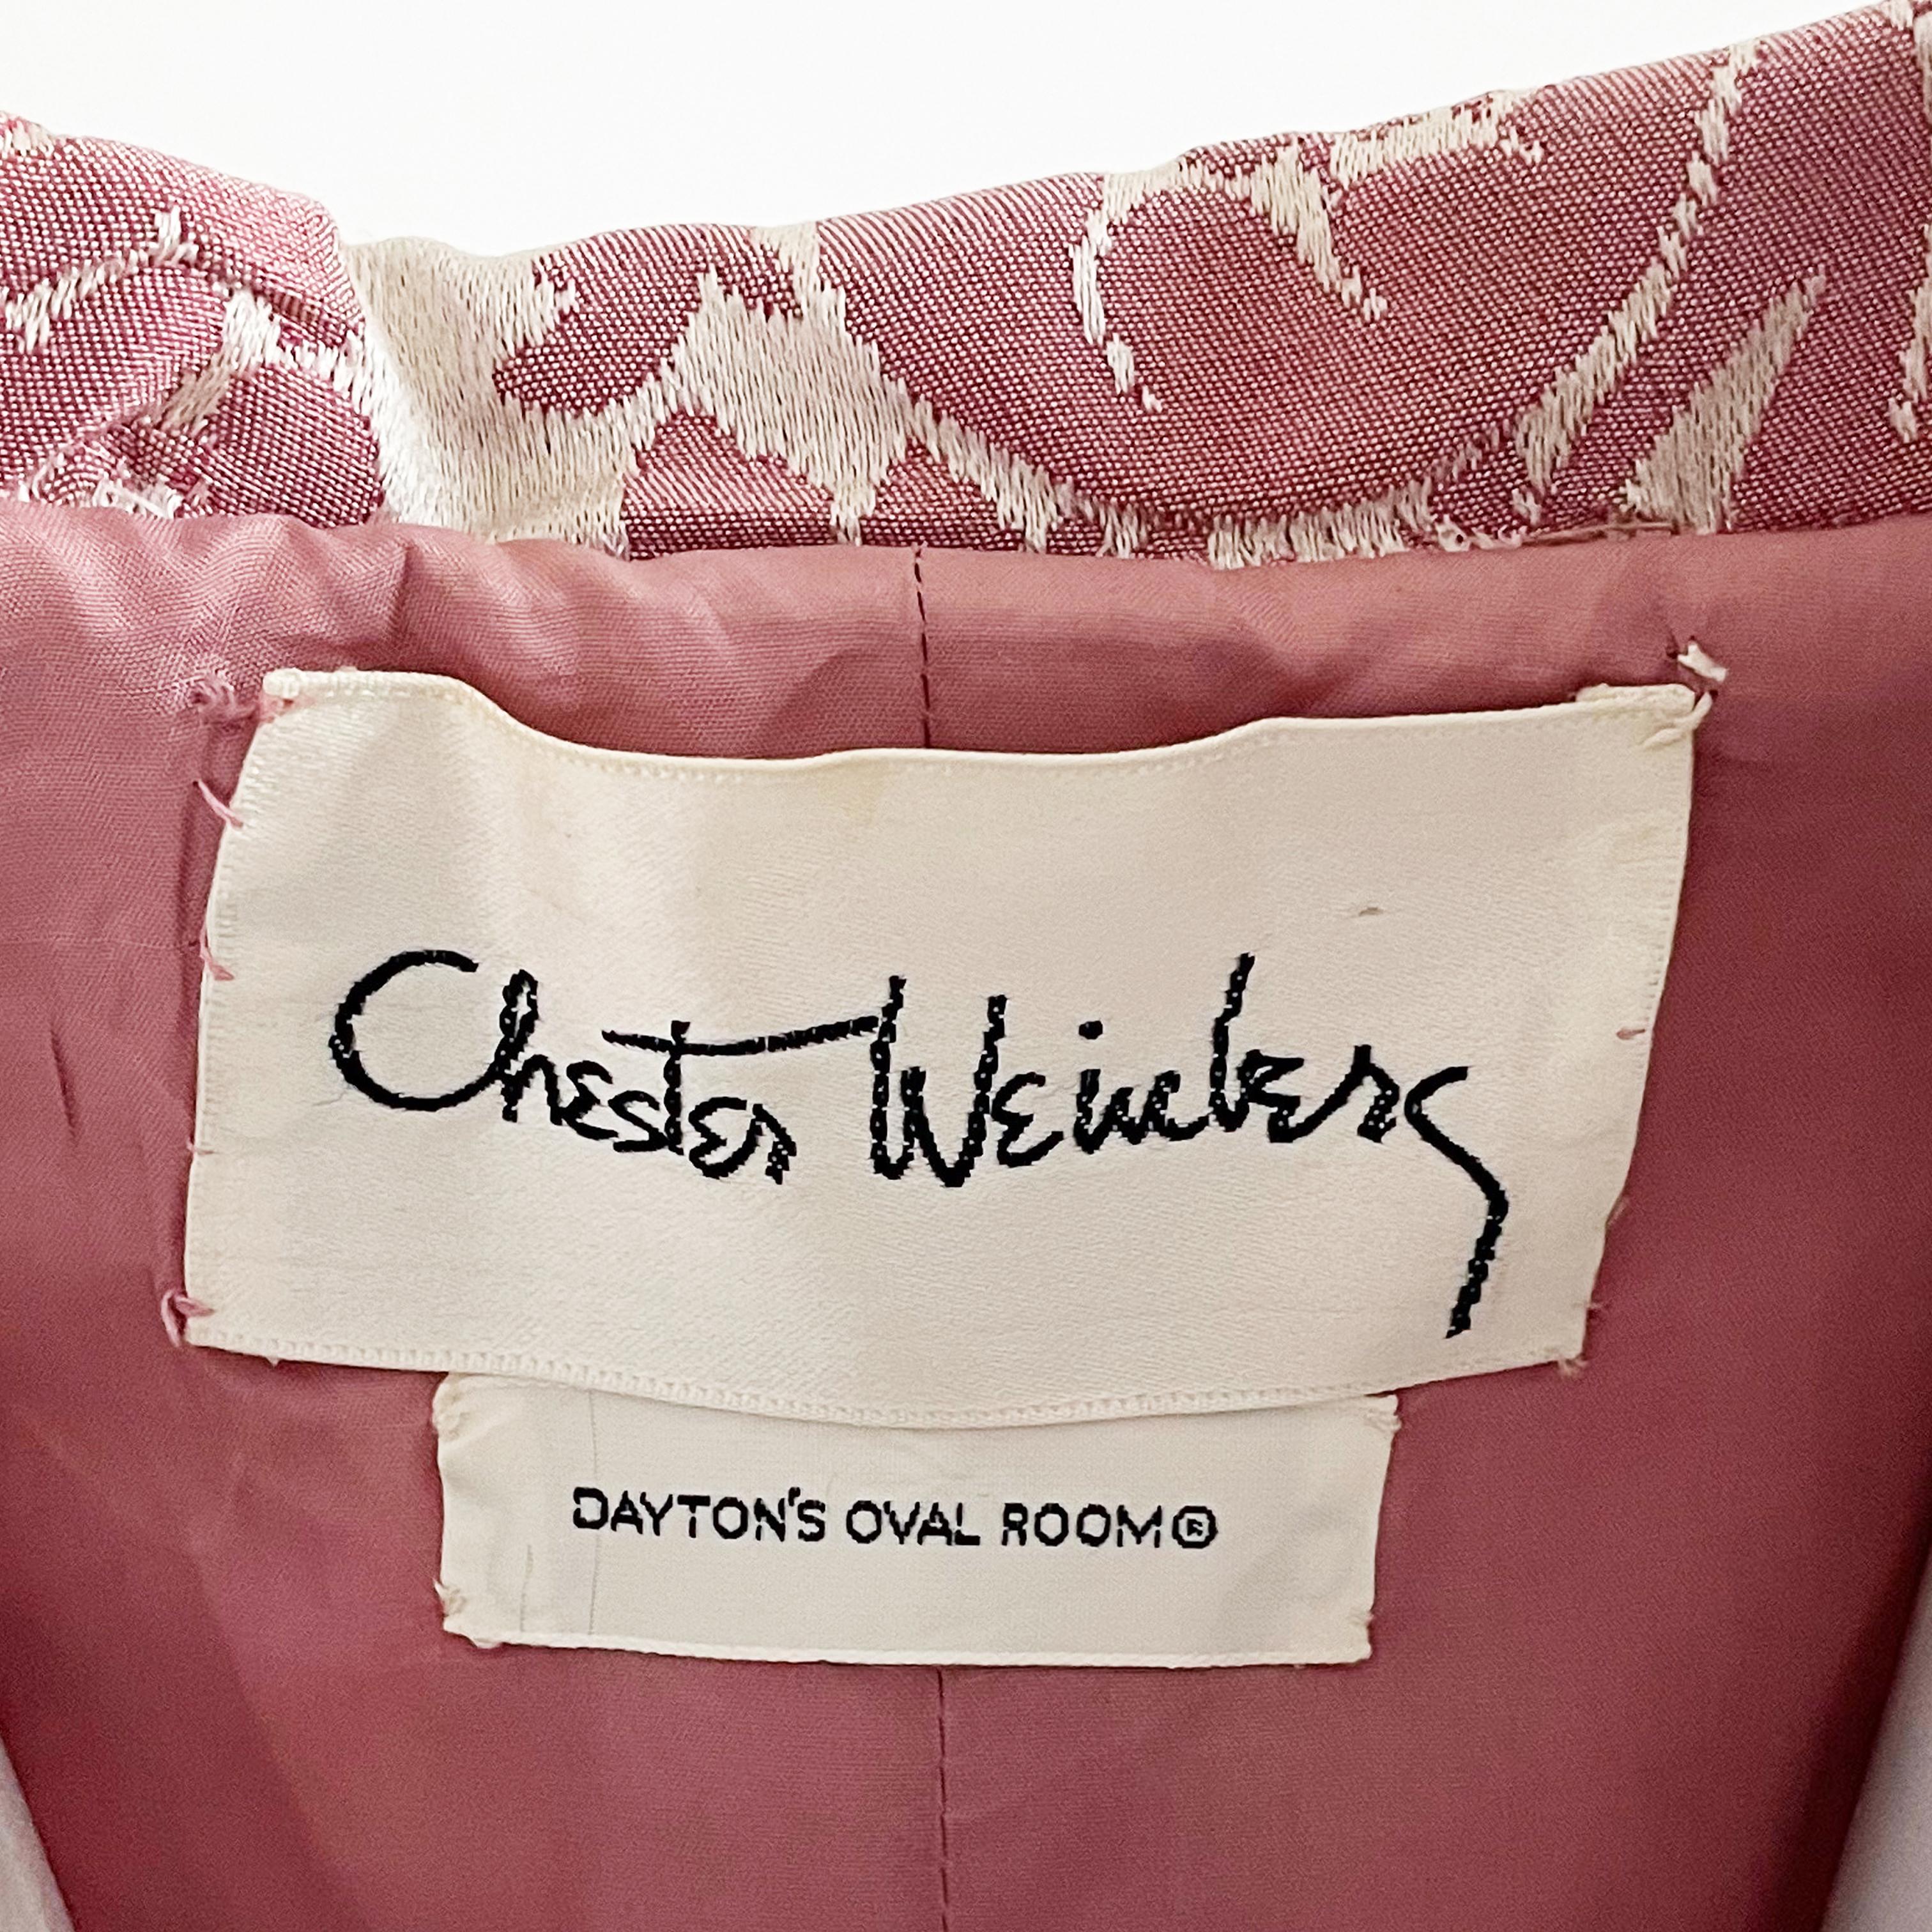 Chester Weinberg Dress Pink Floral Damask 60s Oval Room Dayton's Vintage Rare  6